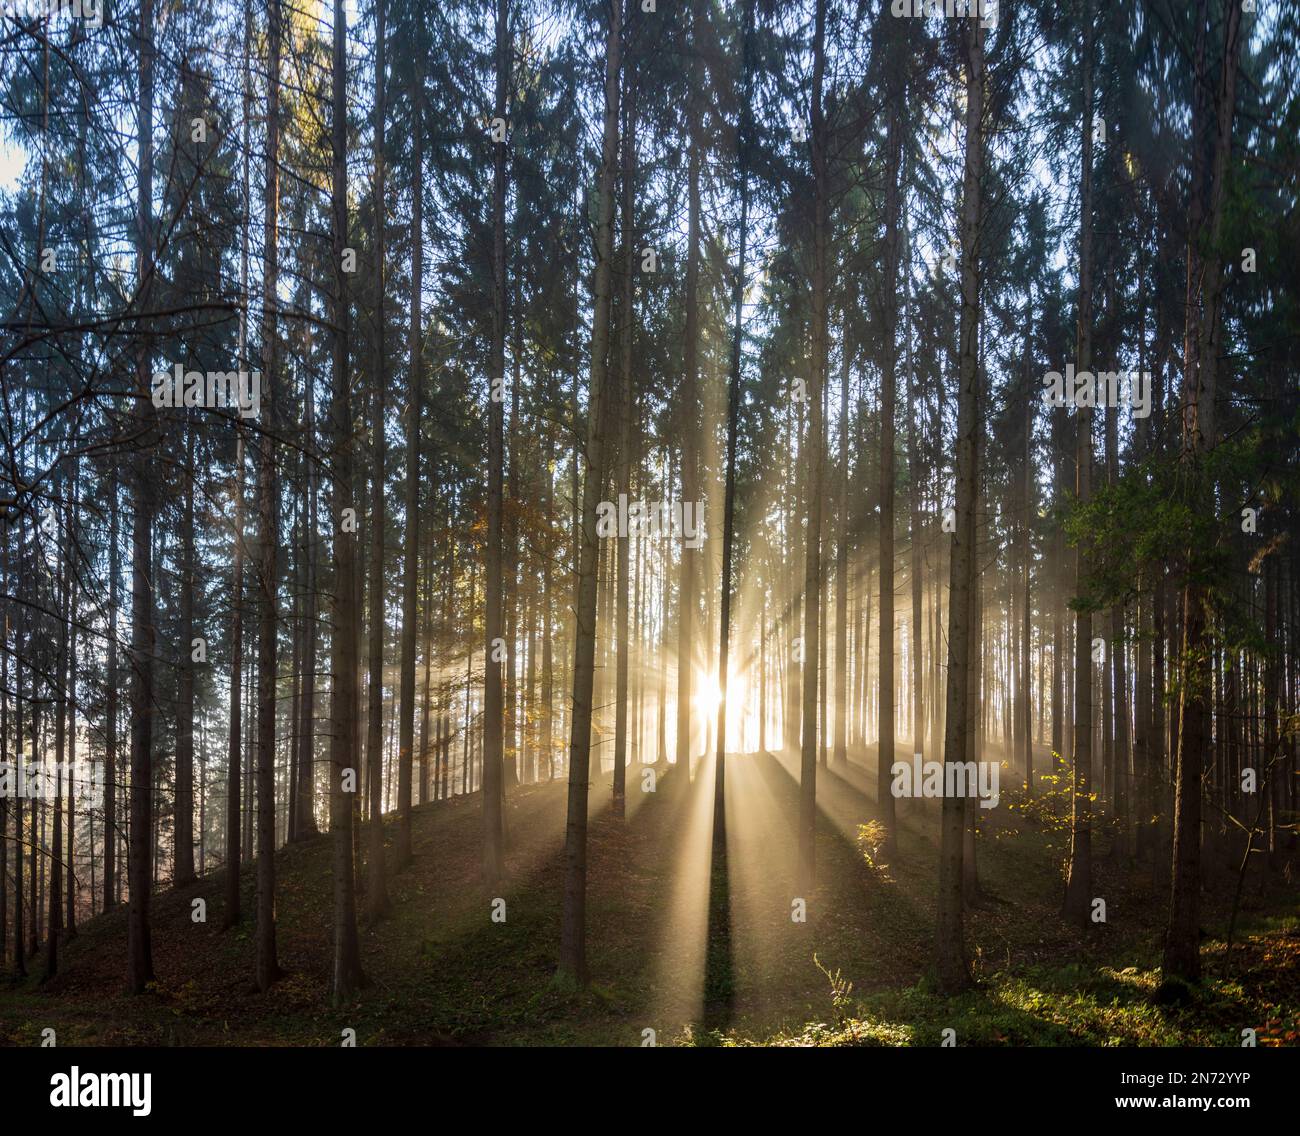 Sulovske skaly (Sulov Rocks), forêt, arbres, rayons du soleil à travers la brume matinale en Slovaquie Banque D'Images